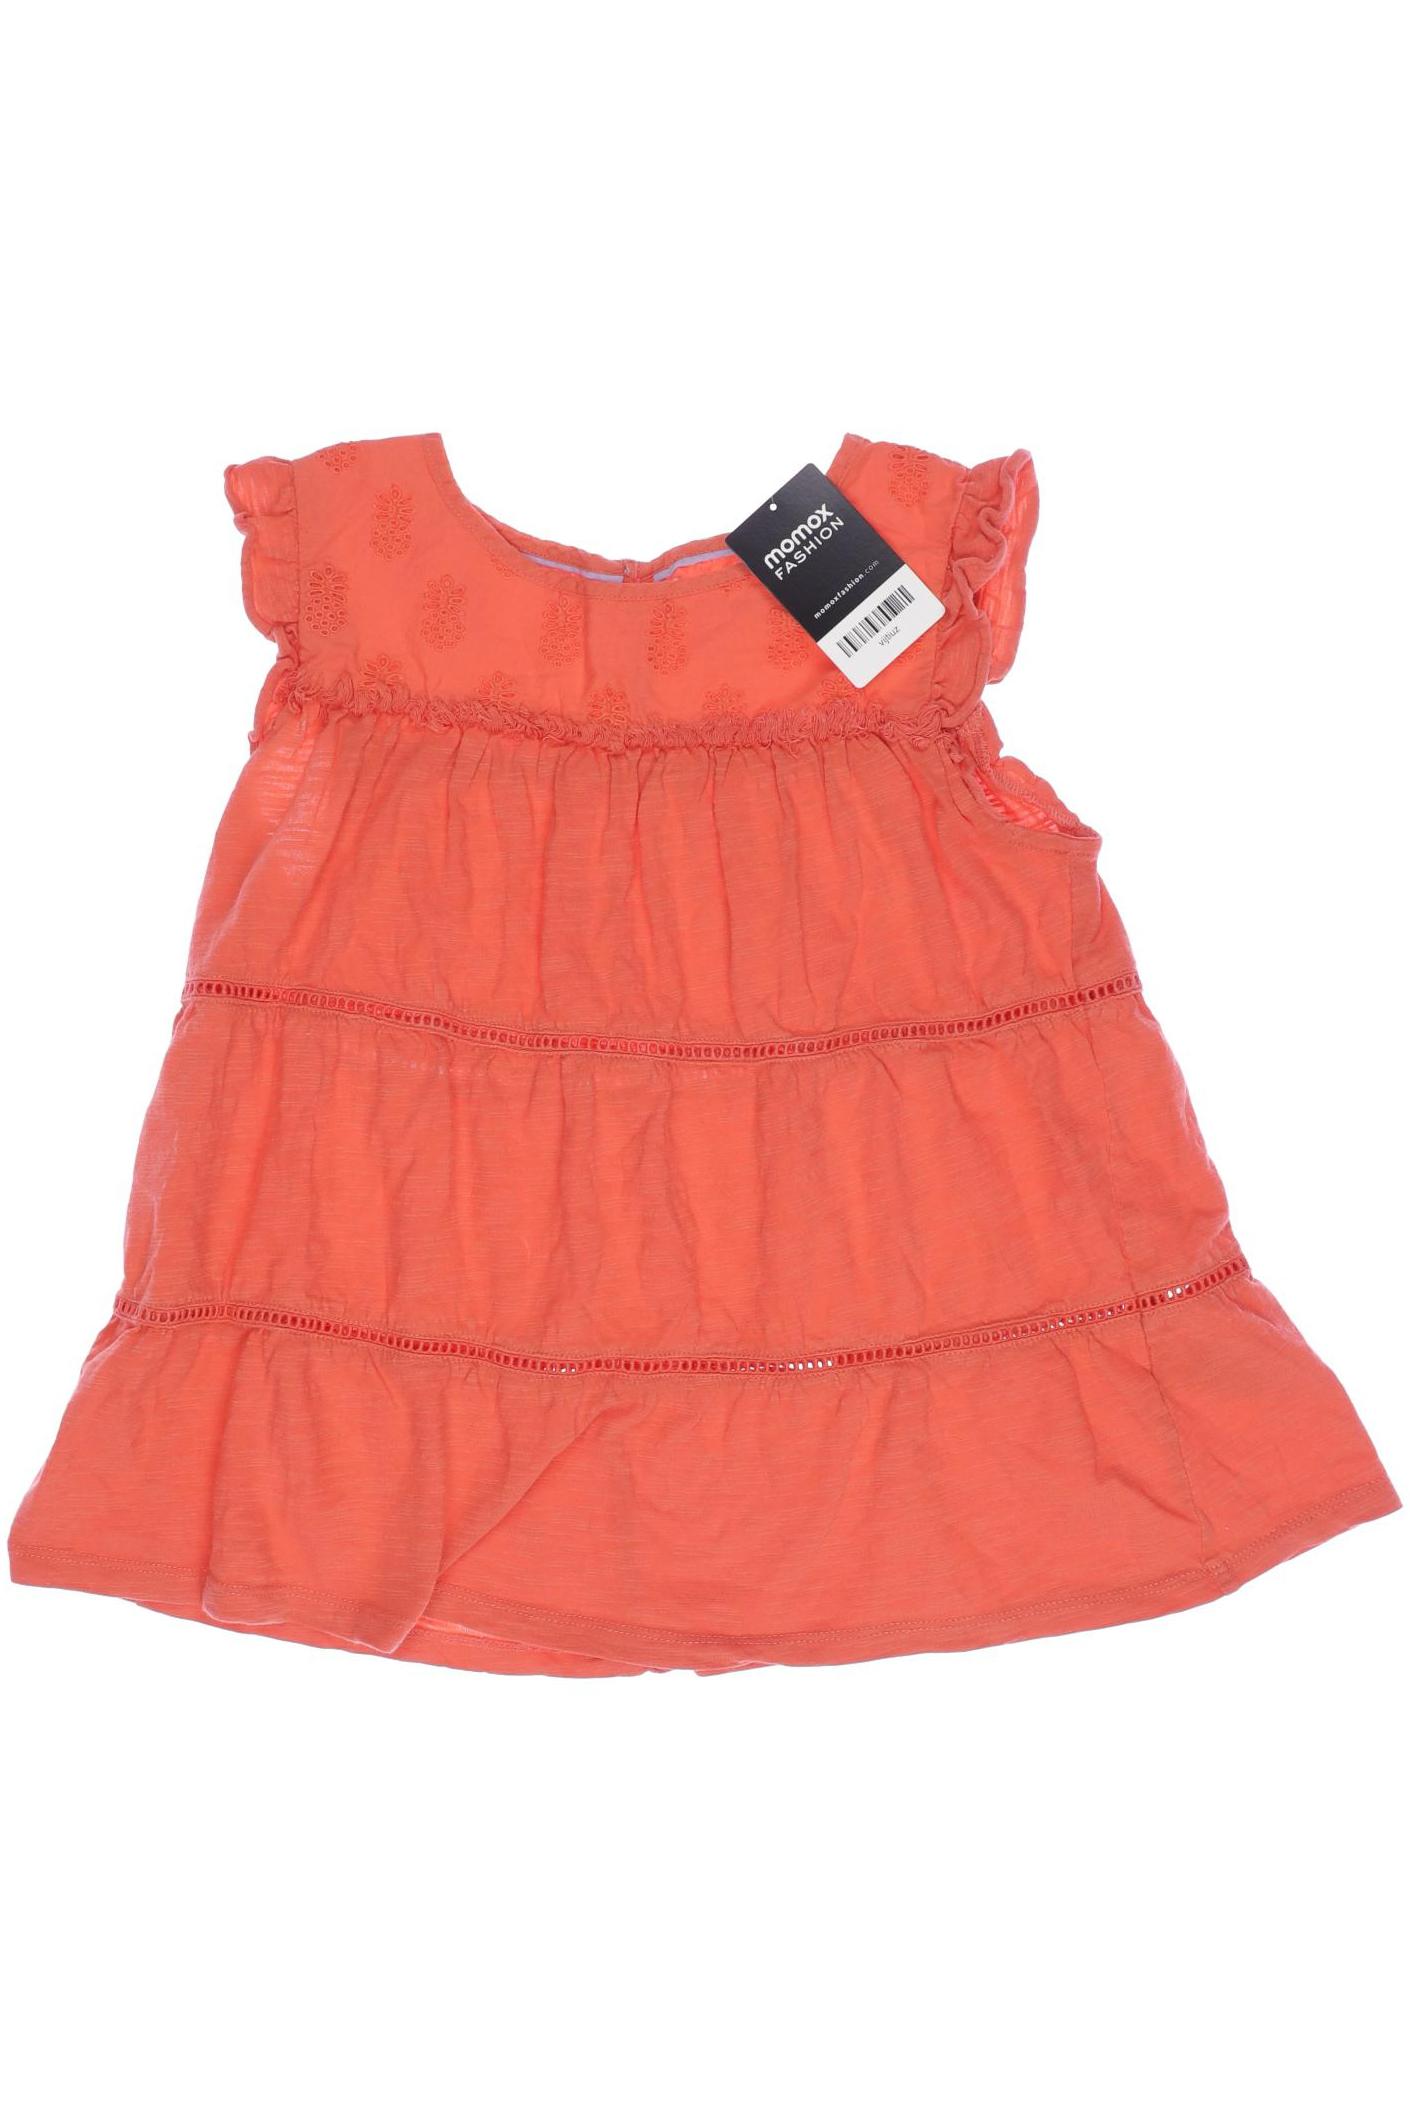 Mini Boden Mädchen Kleid, orange von Mini Boden